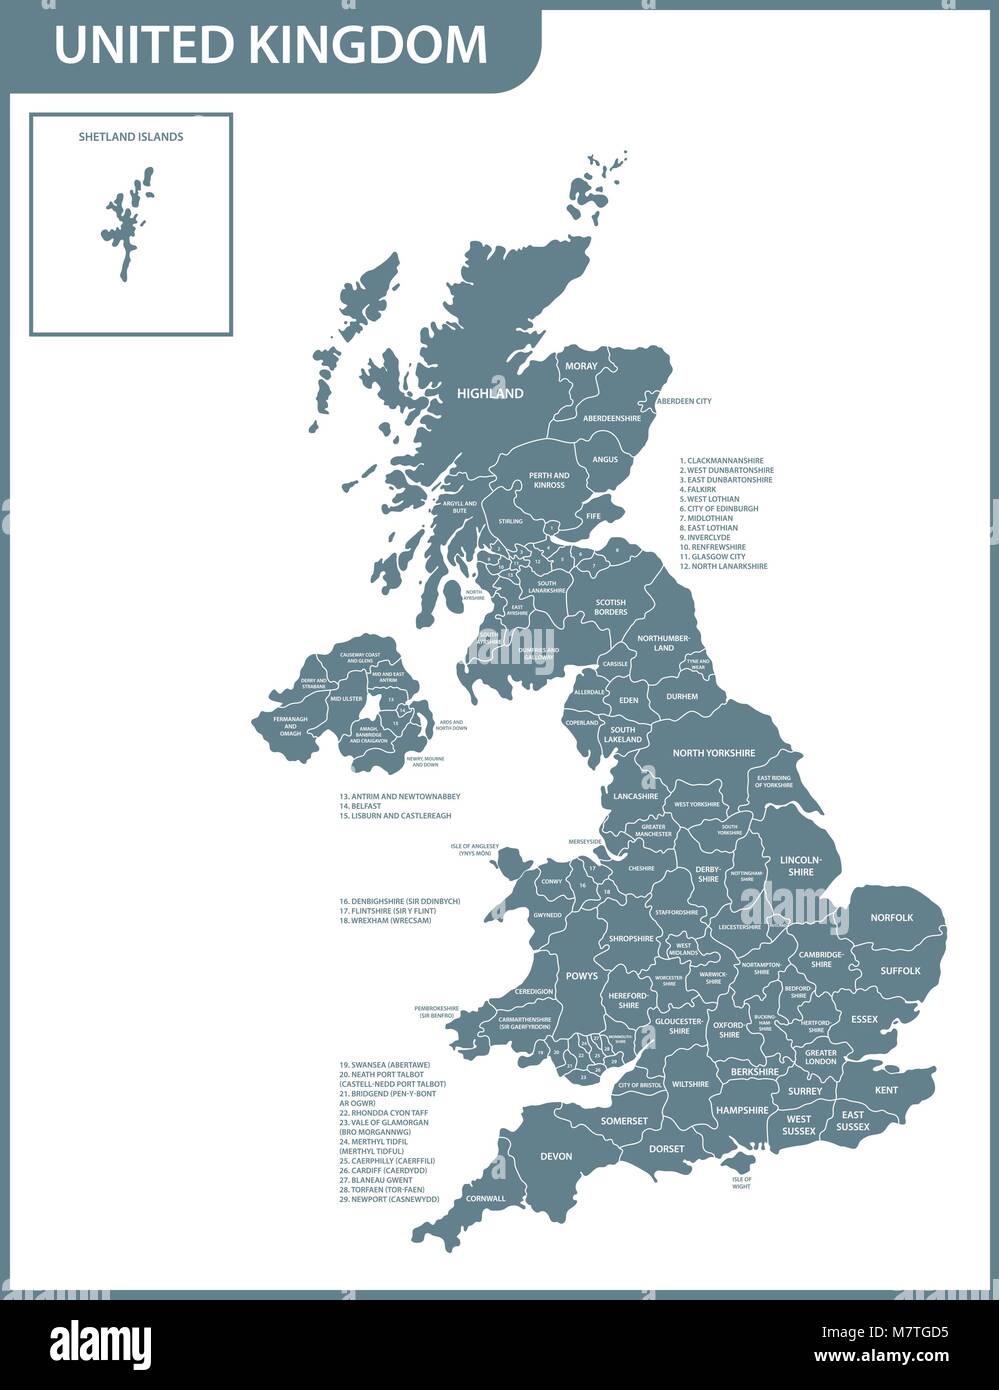 La carte détaillée du Royaume-Uni avec les régions ou états. Le courant réel les UK, Grande-Bretagne devision administrative. Illustration de Vecteur